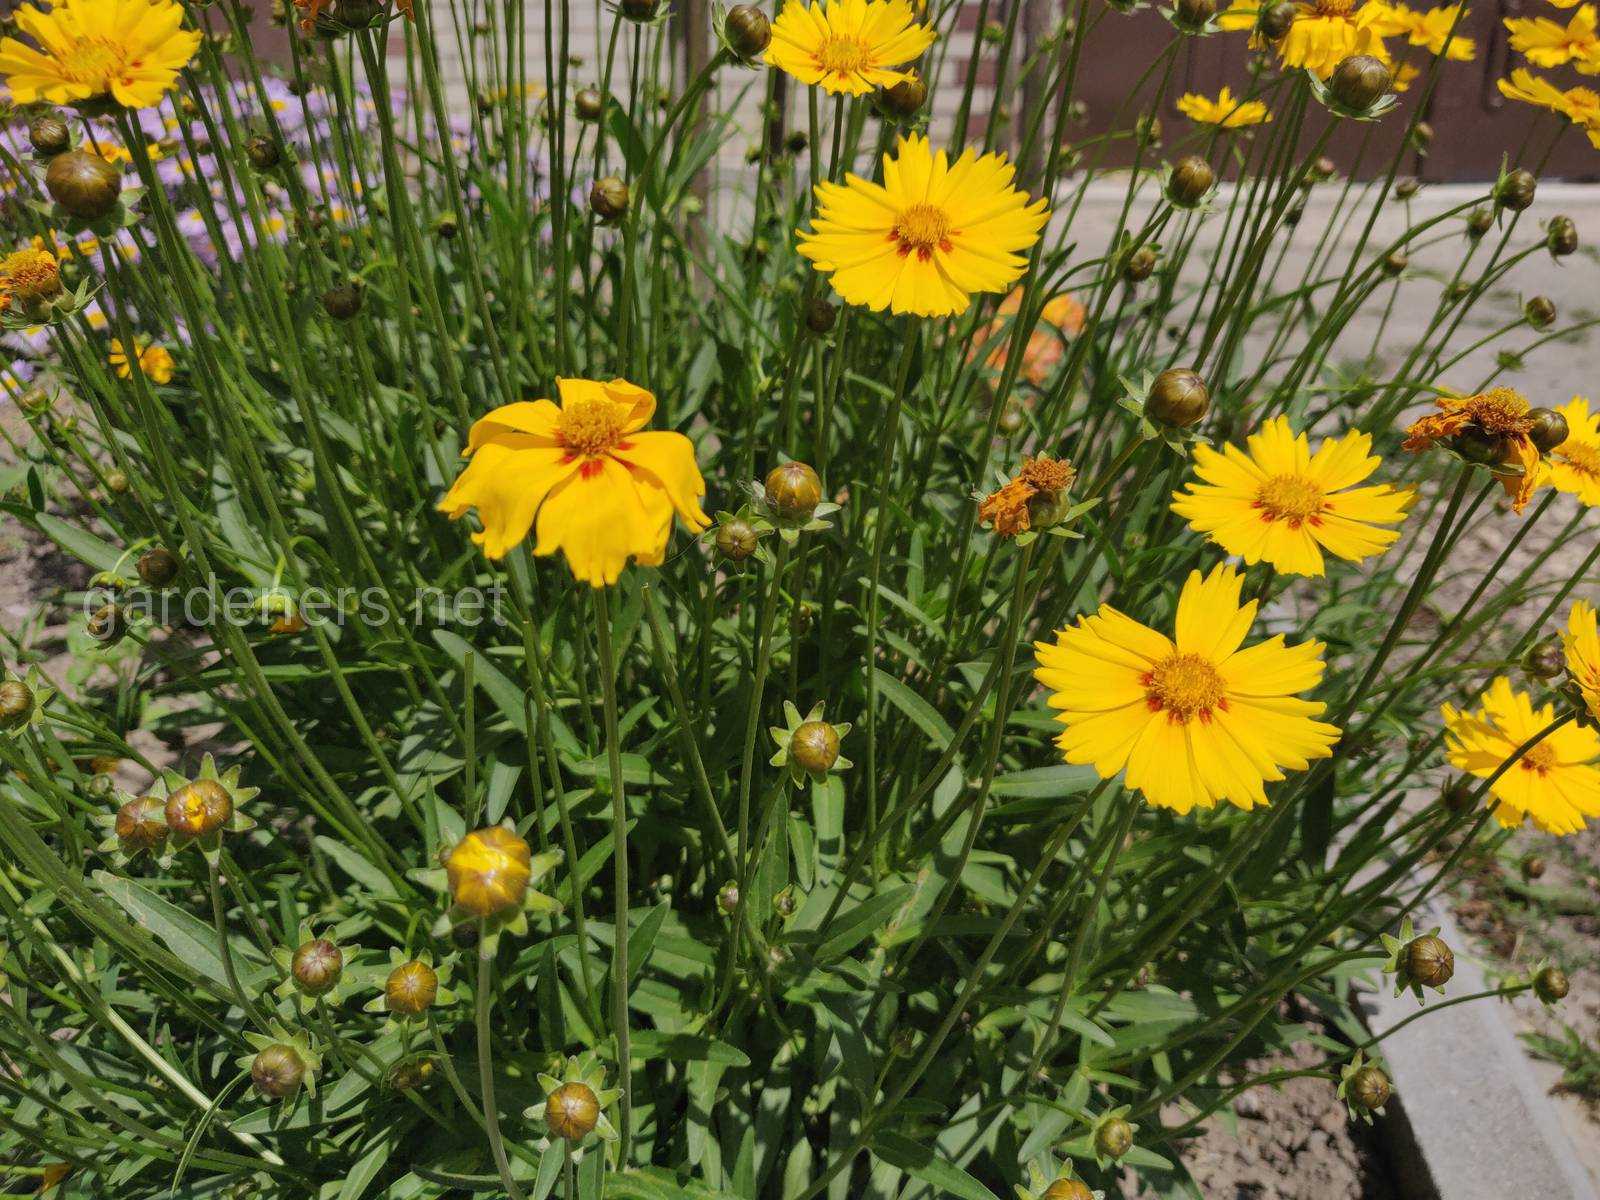 Кореопсис мутовчатый — солнечный многолетник для бедных и сухих почв